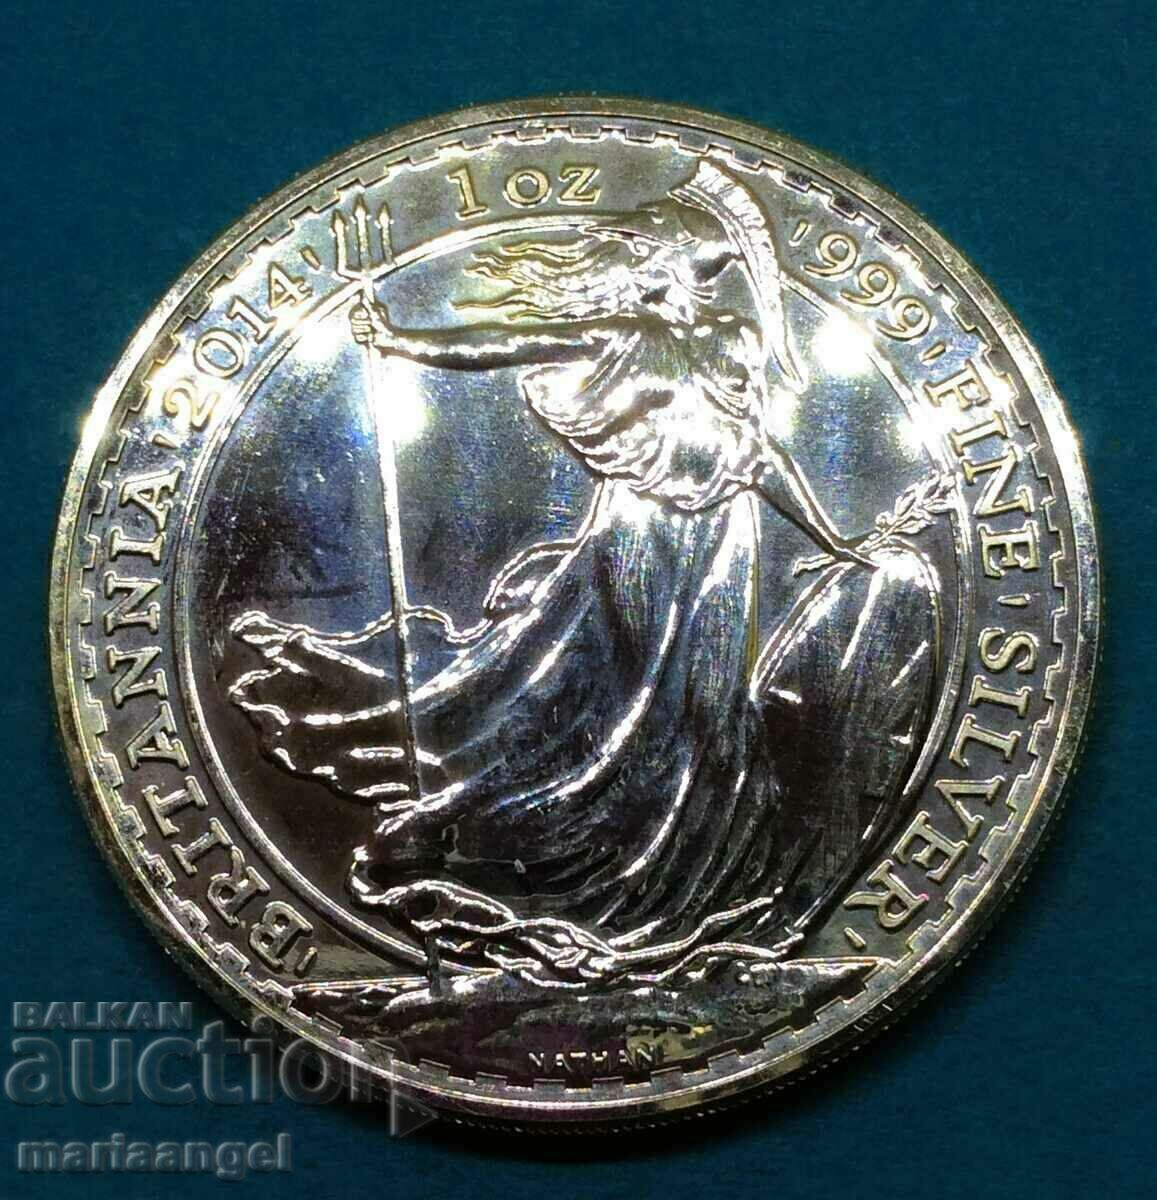 Marea Britanie 1 oz 1999 Elizabeth II Britain Silver